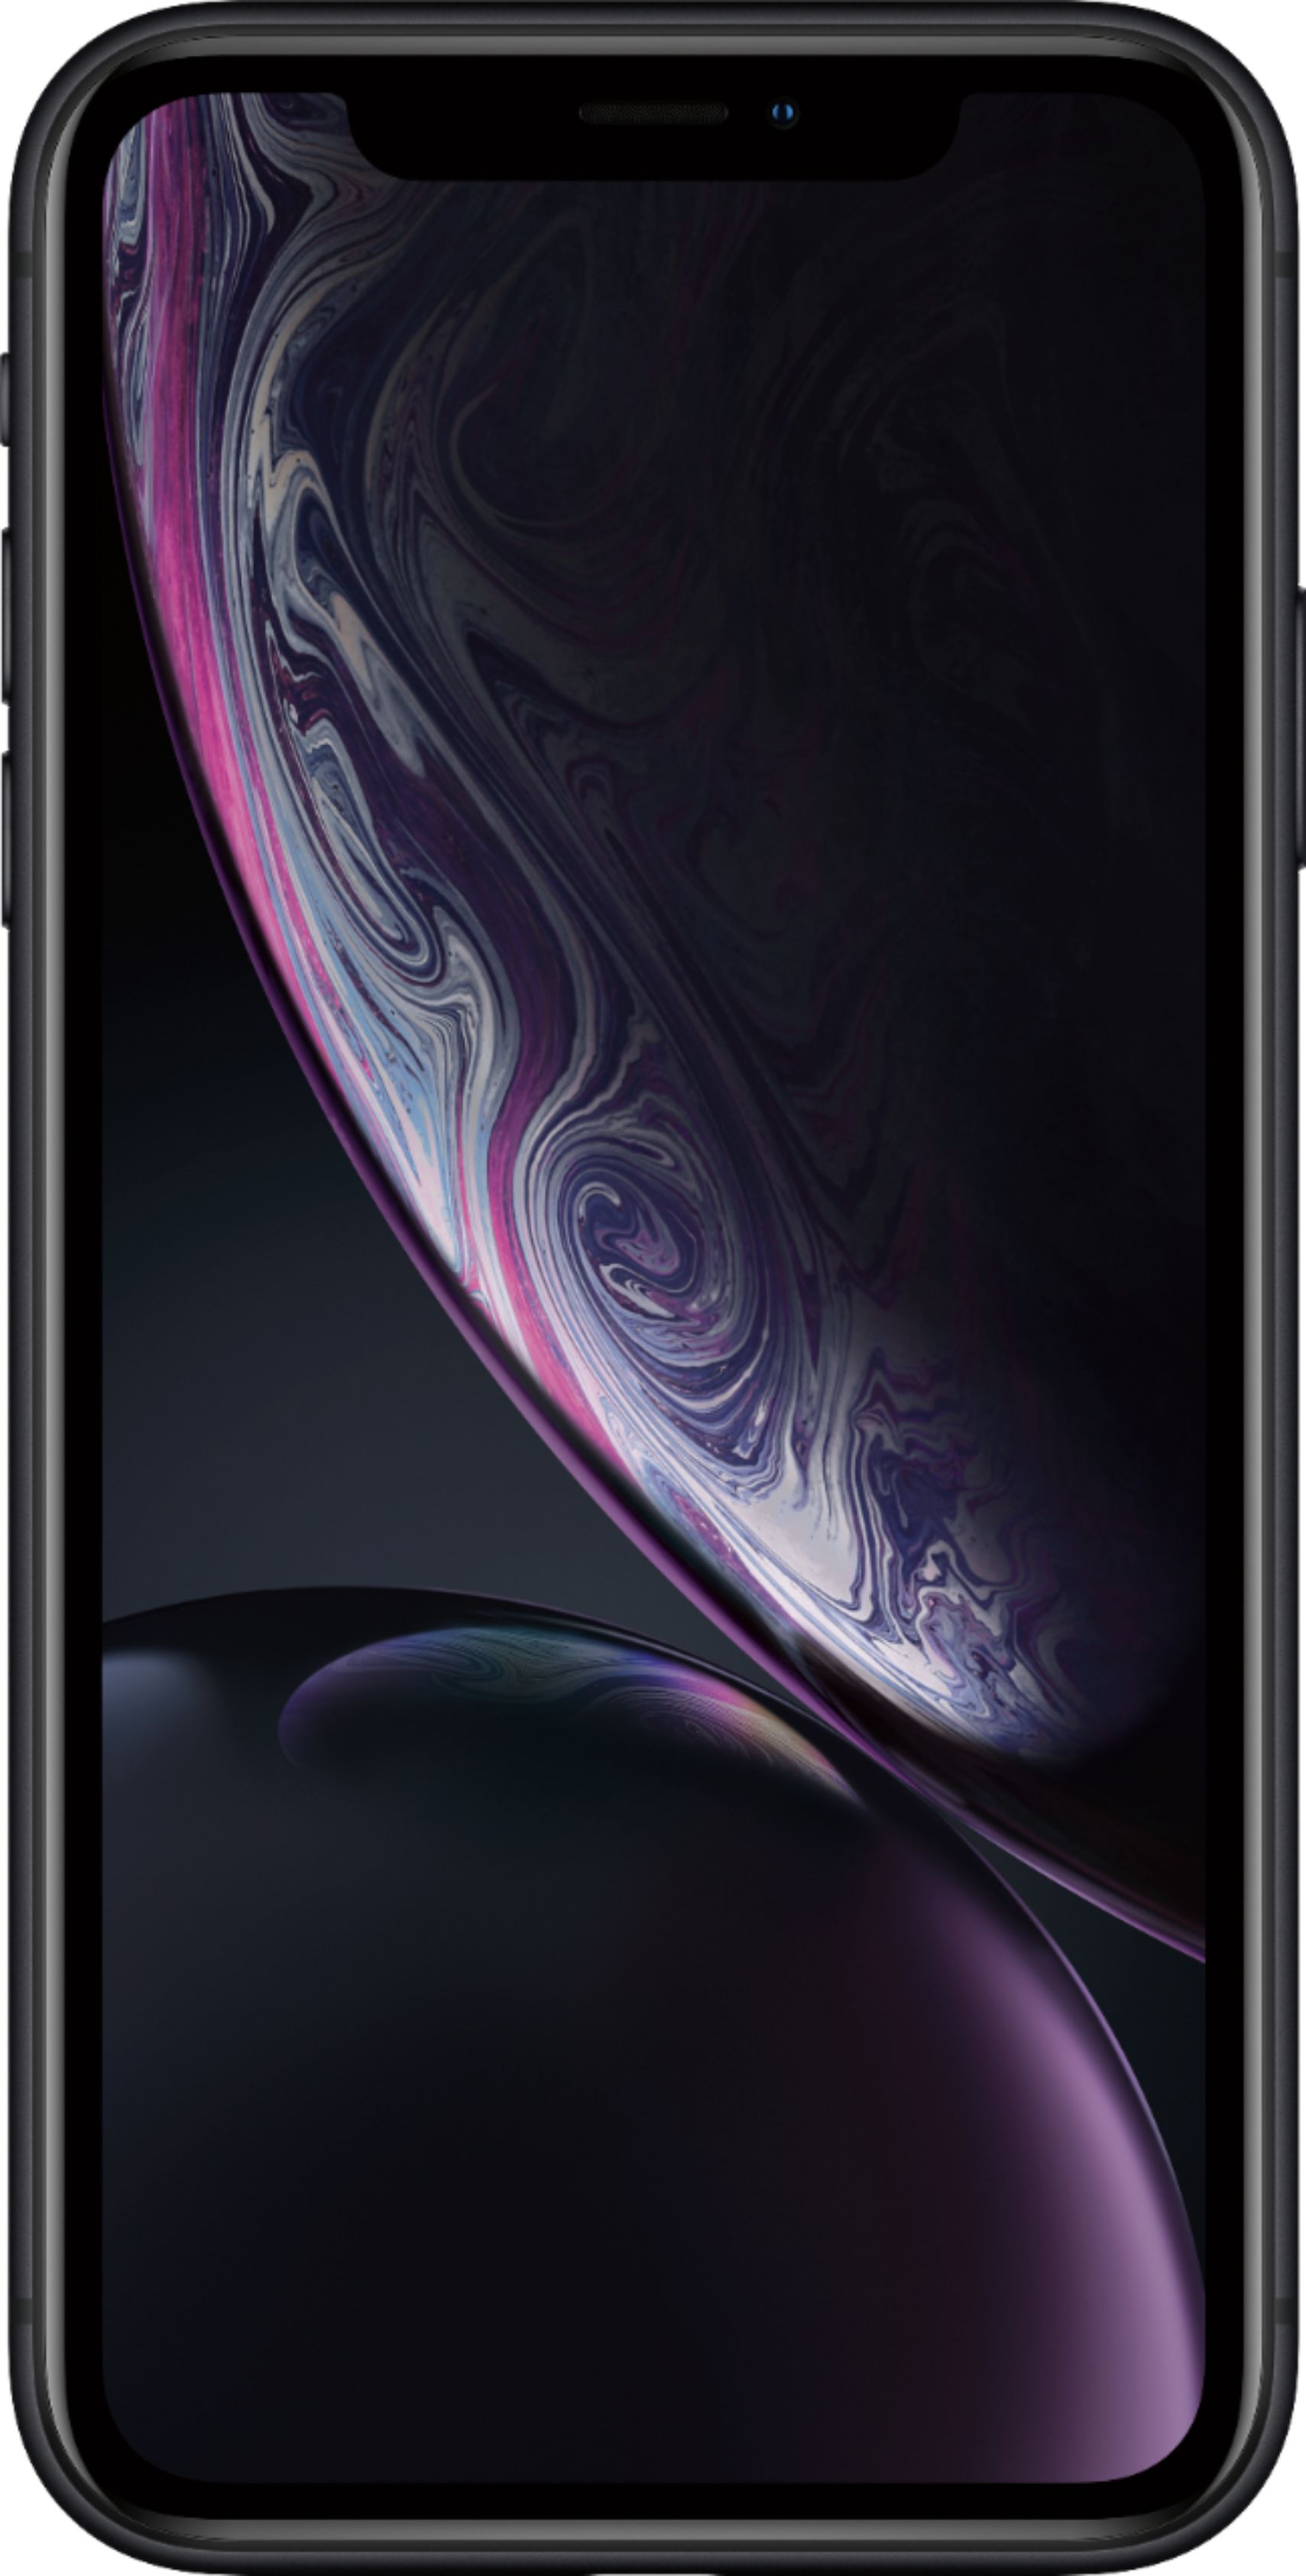 Apple iPhone XR 64GB Black (Verizon) MRYR2LL/A - Best Buy